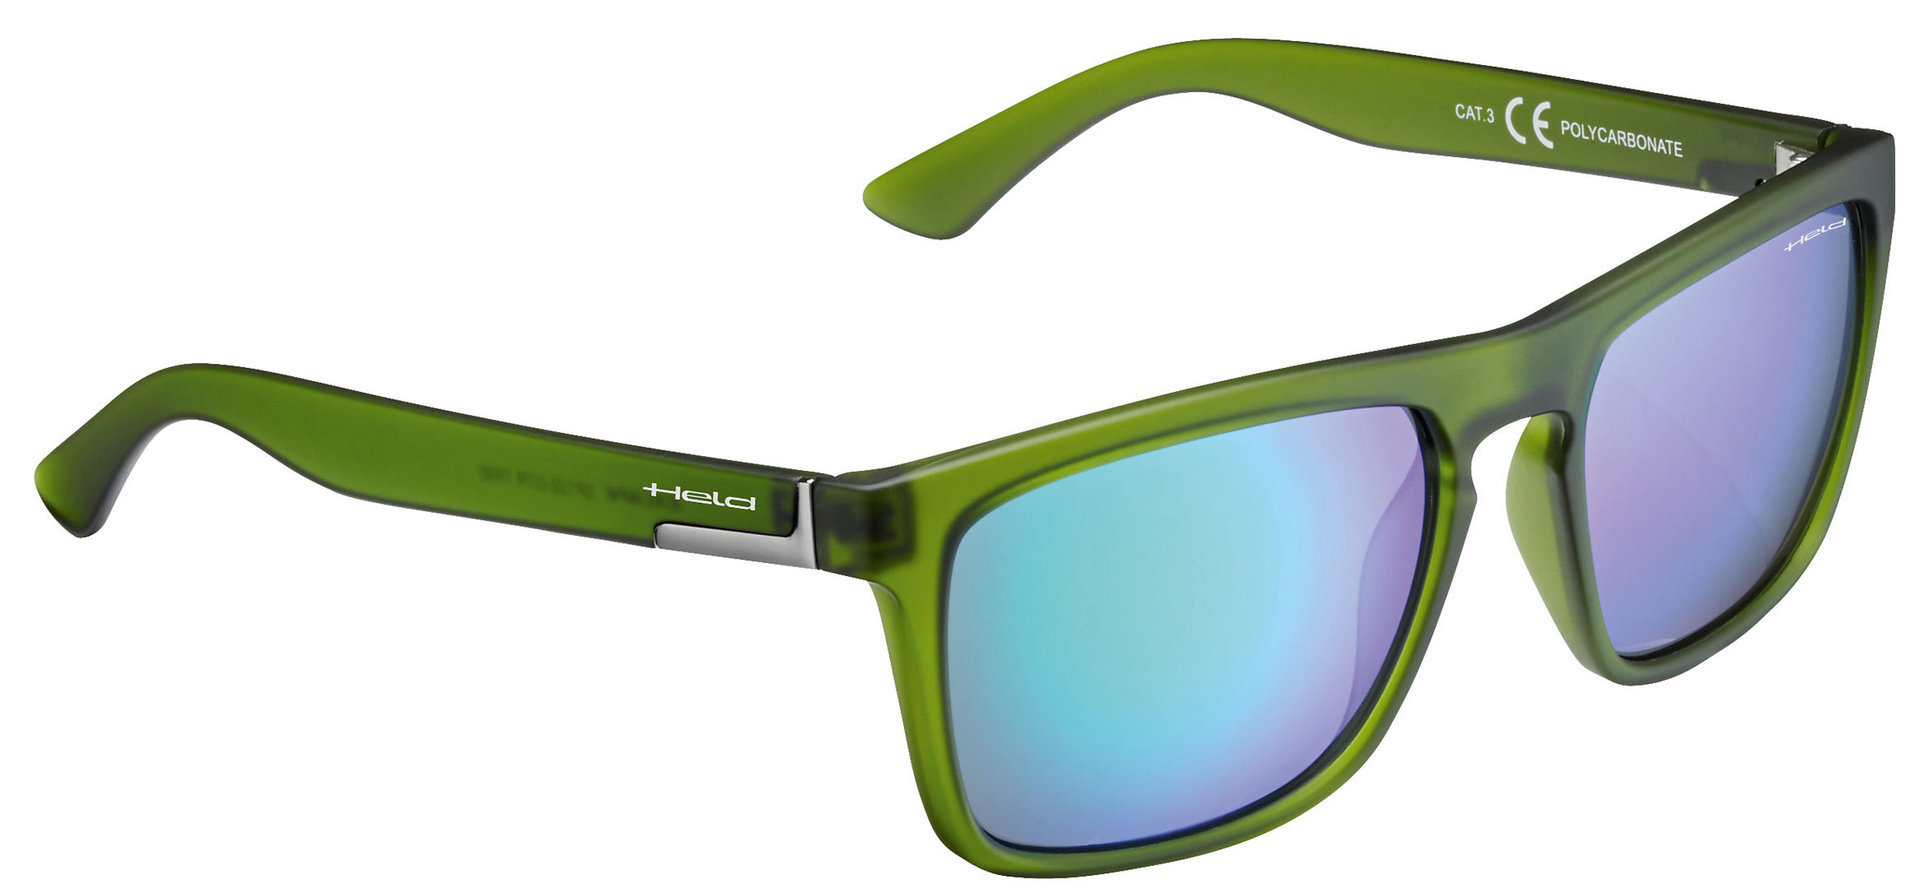 солнцезащитные очки kandy 338011 коричневый зеленый Очки Held 9541 солнцезащитные, зеленый